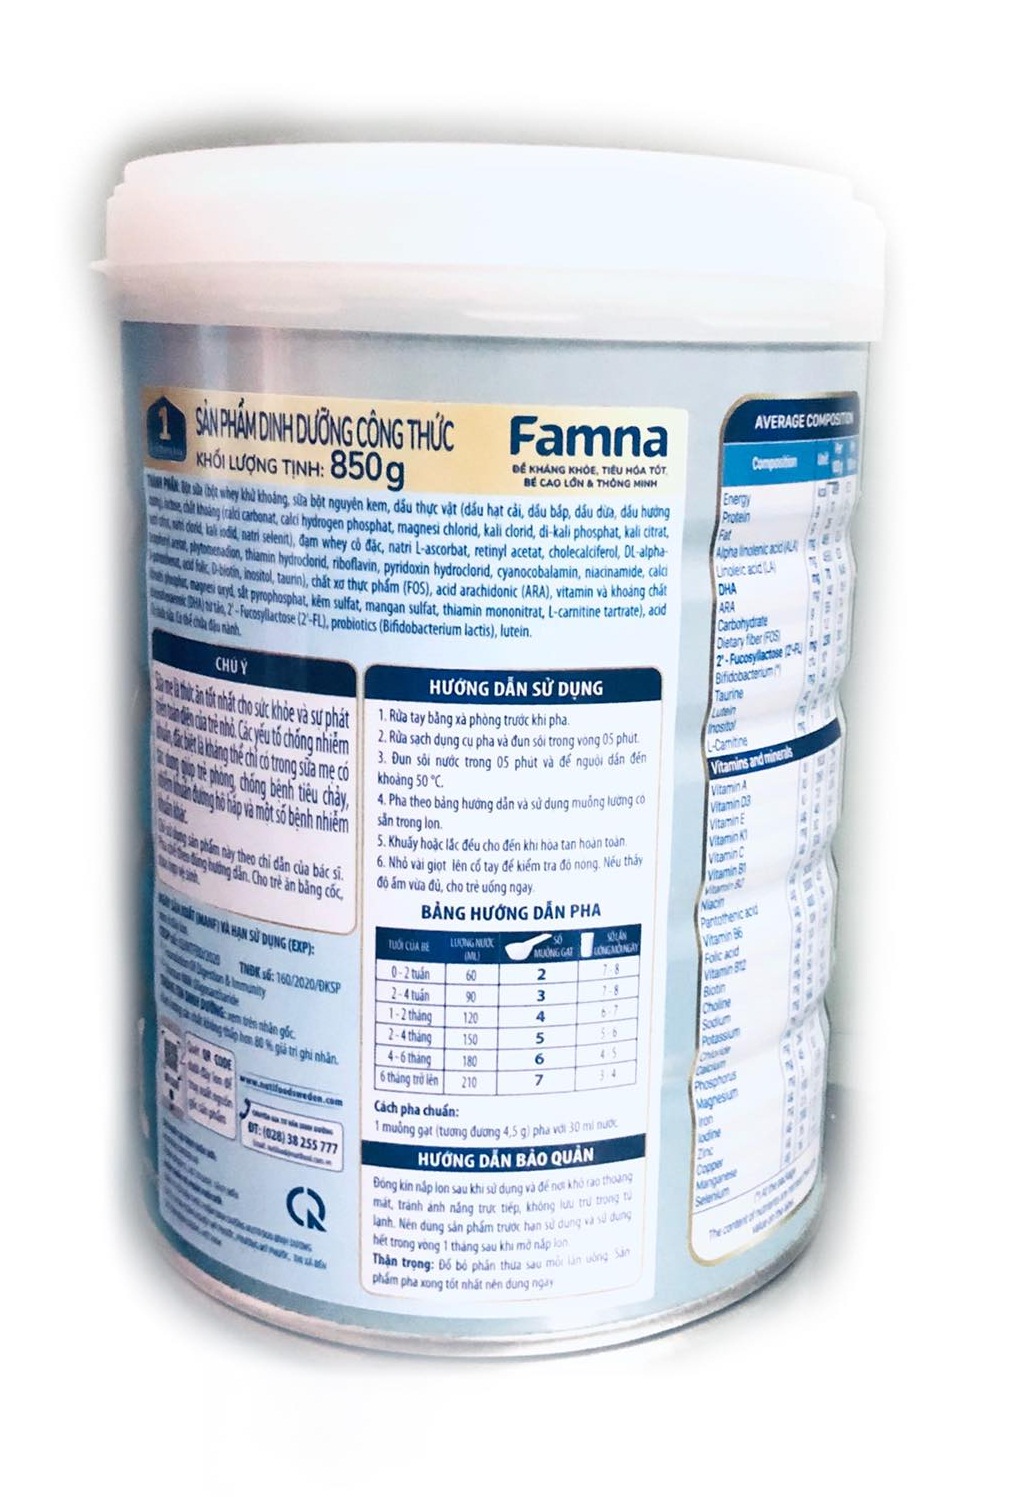 Bộ 5 lon sữa Famna step 1 850g - Đề kháng khoẻ, tiêu hoá tốt, bé cao lớn và thông minh - Hàng chính hãng của NutiFood